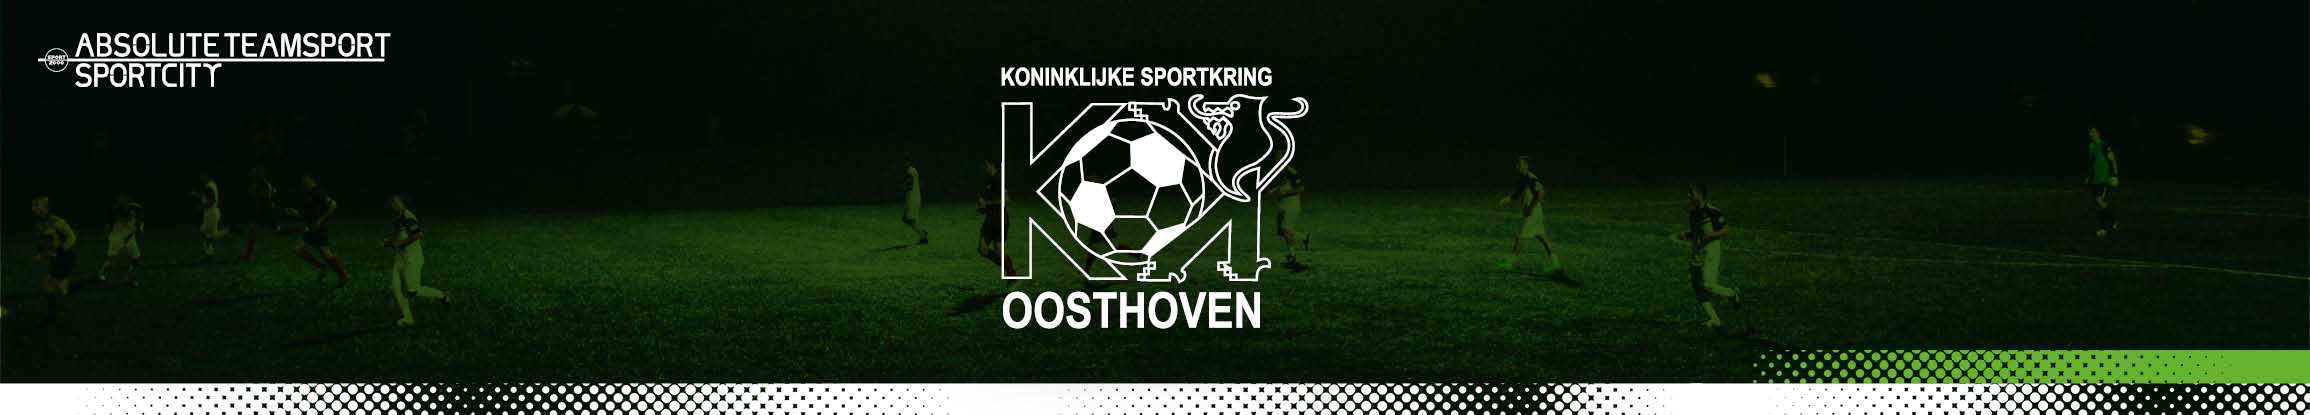 KSK Oosthoven Title Image